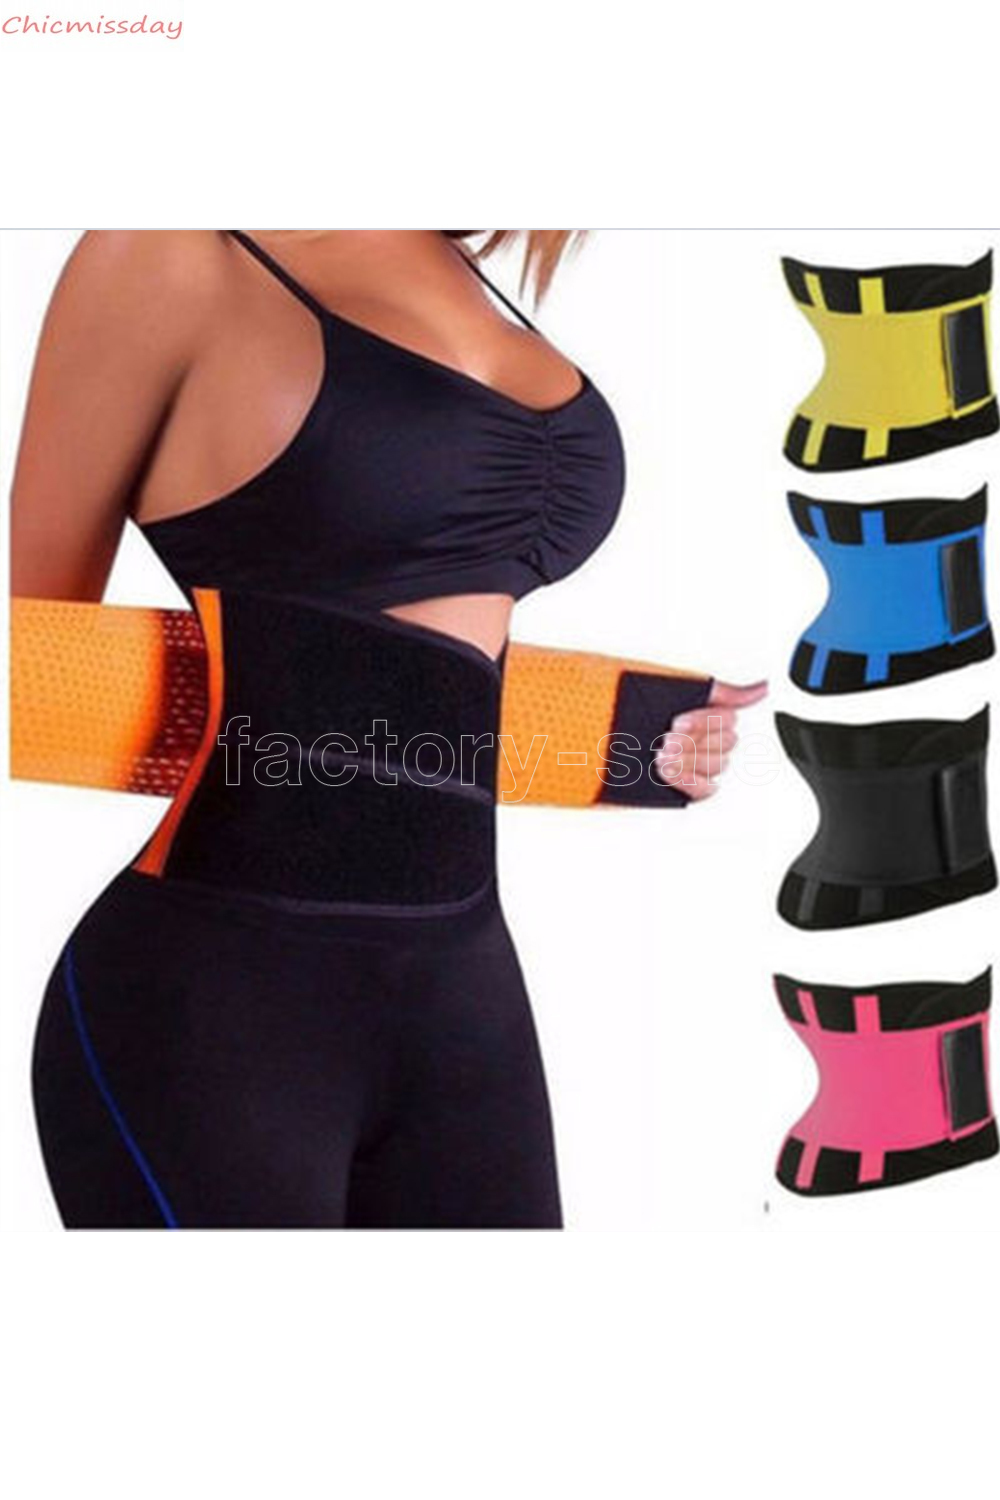 

Plus Size Body Shaper Waist Trainer Belt Women Postpartum Belly Slimming Underwear Modeling Strap Shapewear Tummy Fitness Corset FY8052, Yellow